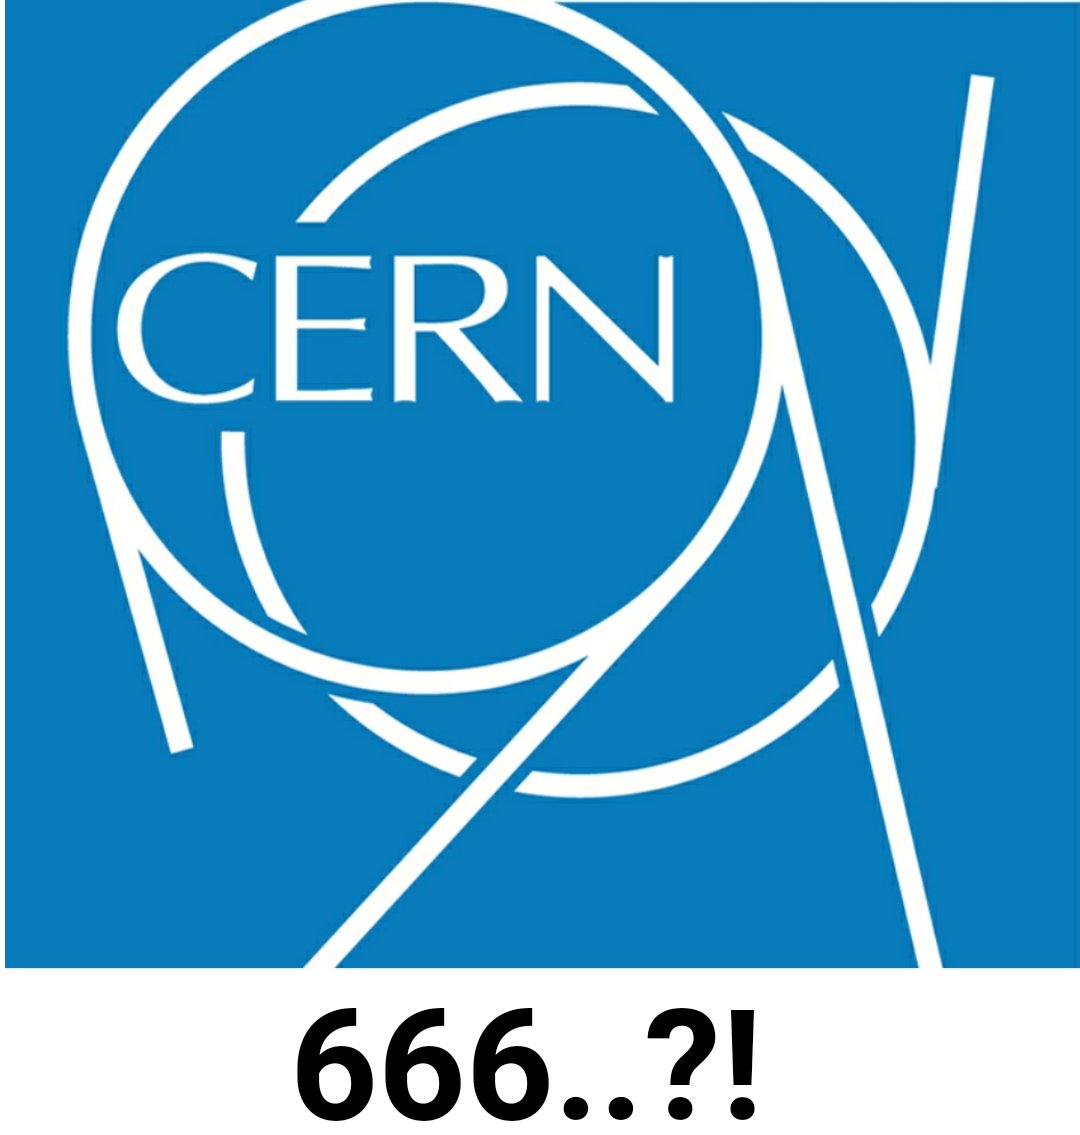 Ortada  bilim yok, iblisin dini var..

CERN projesi de virüs, uzay vb masallar gibi bir palavra.. 
Tanrı parçacığı dedikleri hurafelerine inandırmaya çalışıyorlar

Modern bilimin asıl görevi ;
Kabalcıların/satanistlerin dinlerini/hurafelerini doğrulamak için çalışmaktır